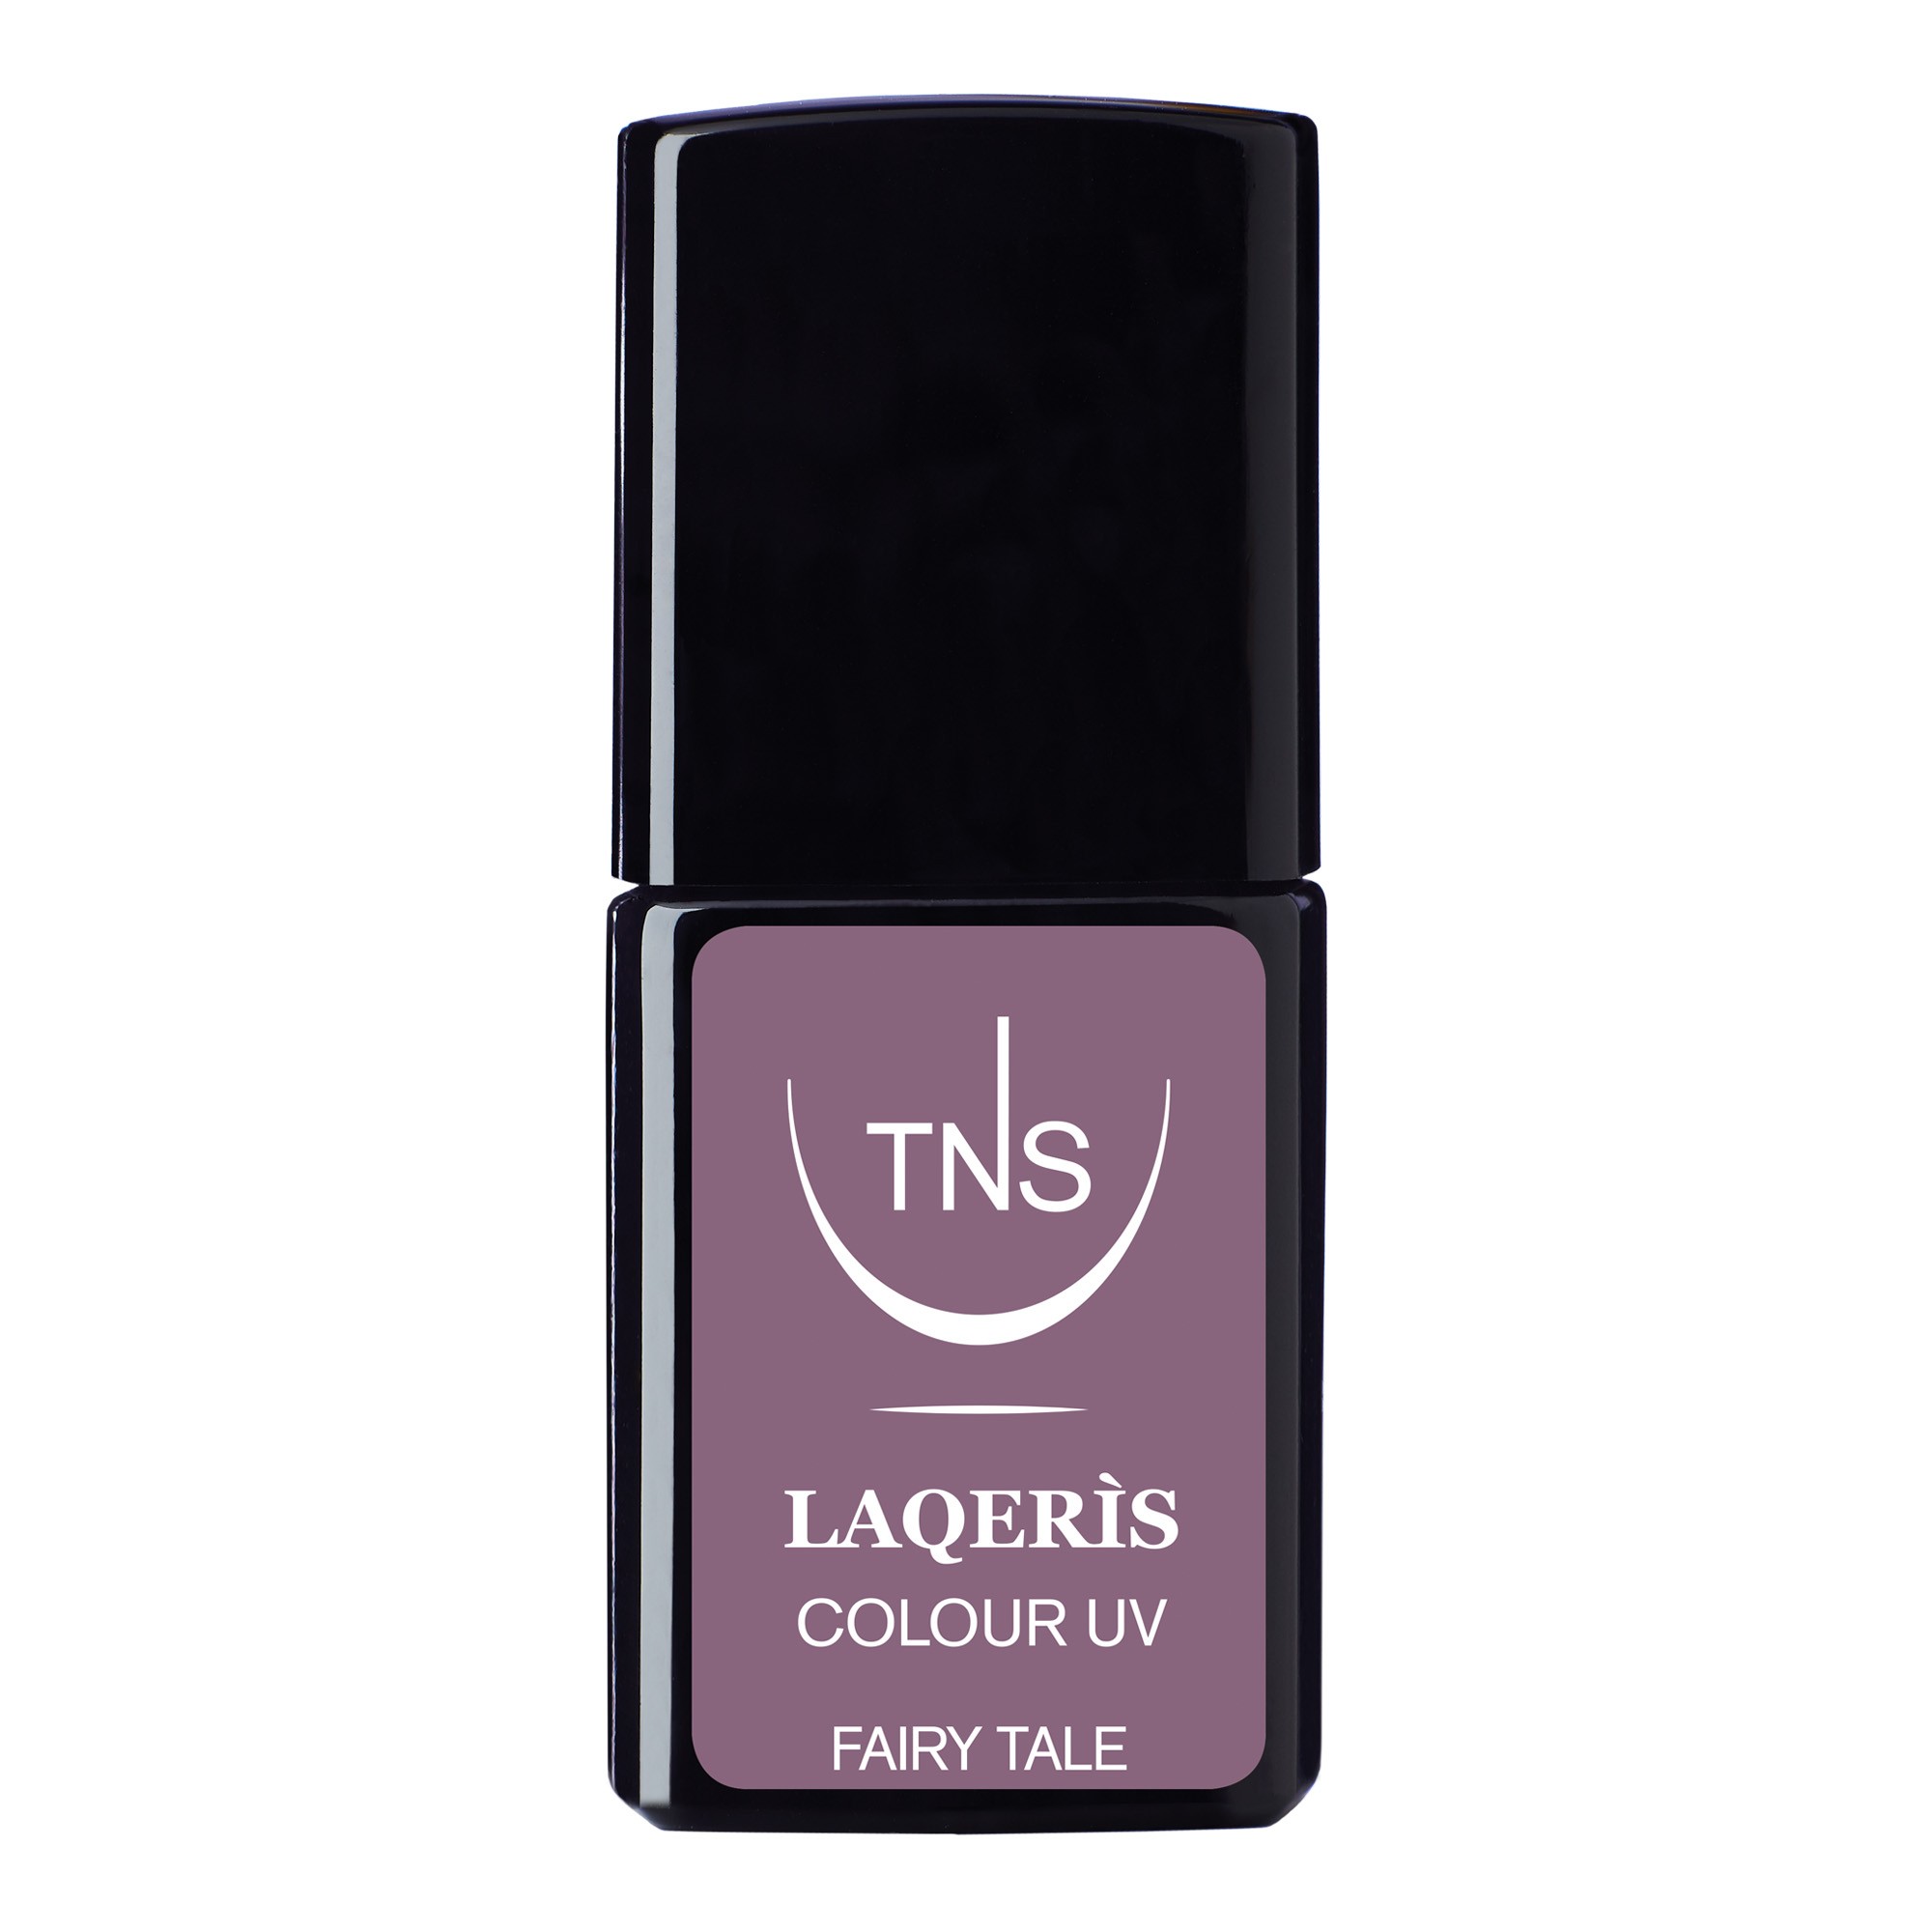 Semi-permanent nail polish matt lilac Fairy Tale 10 ml Laqerìs TNS